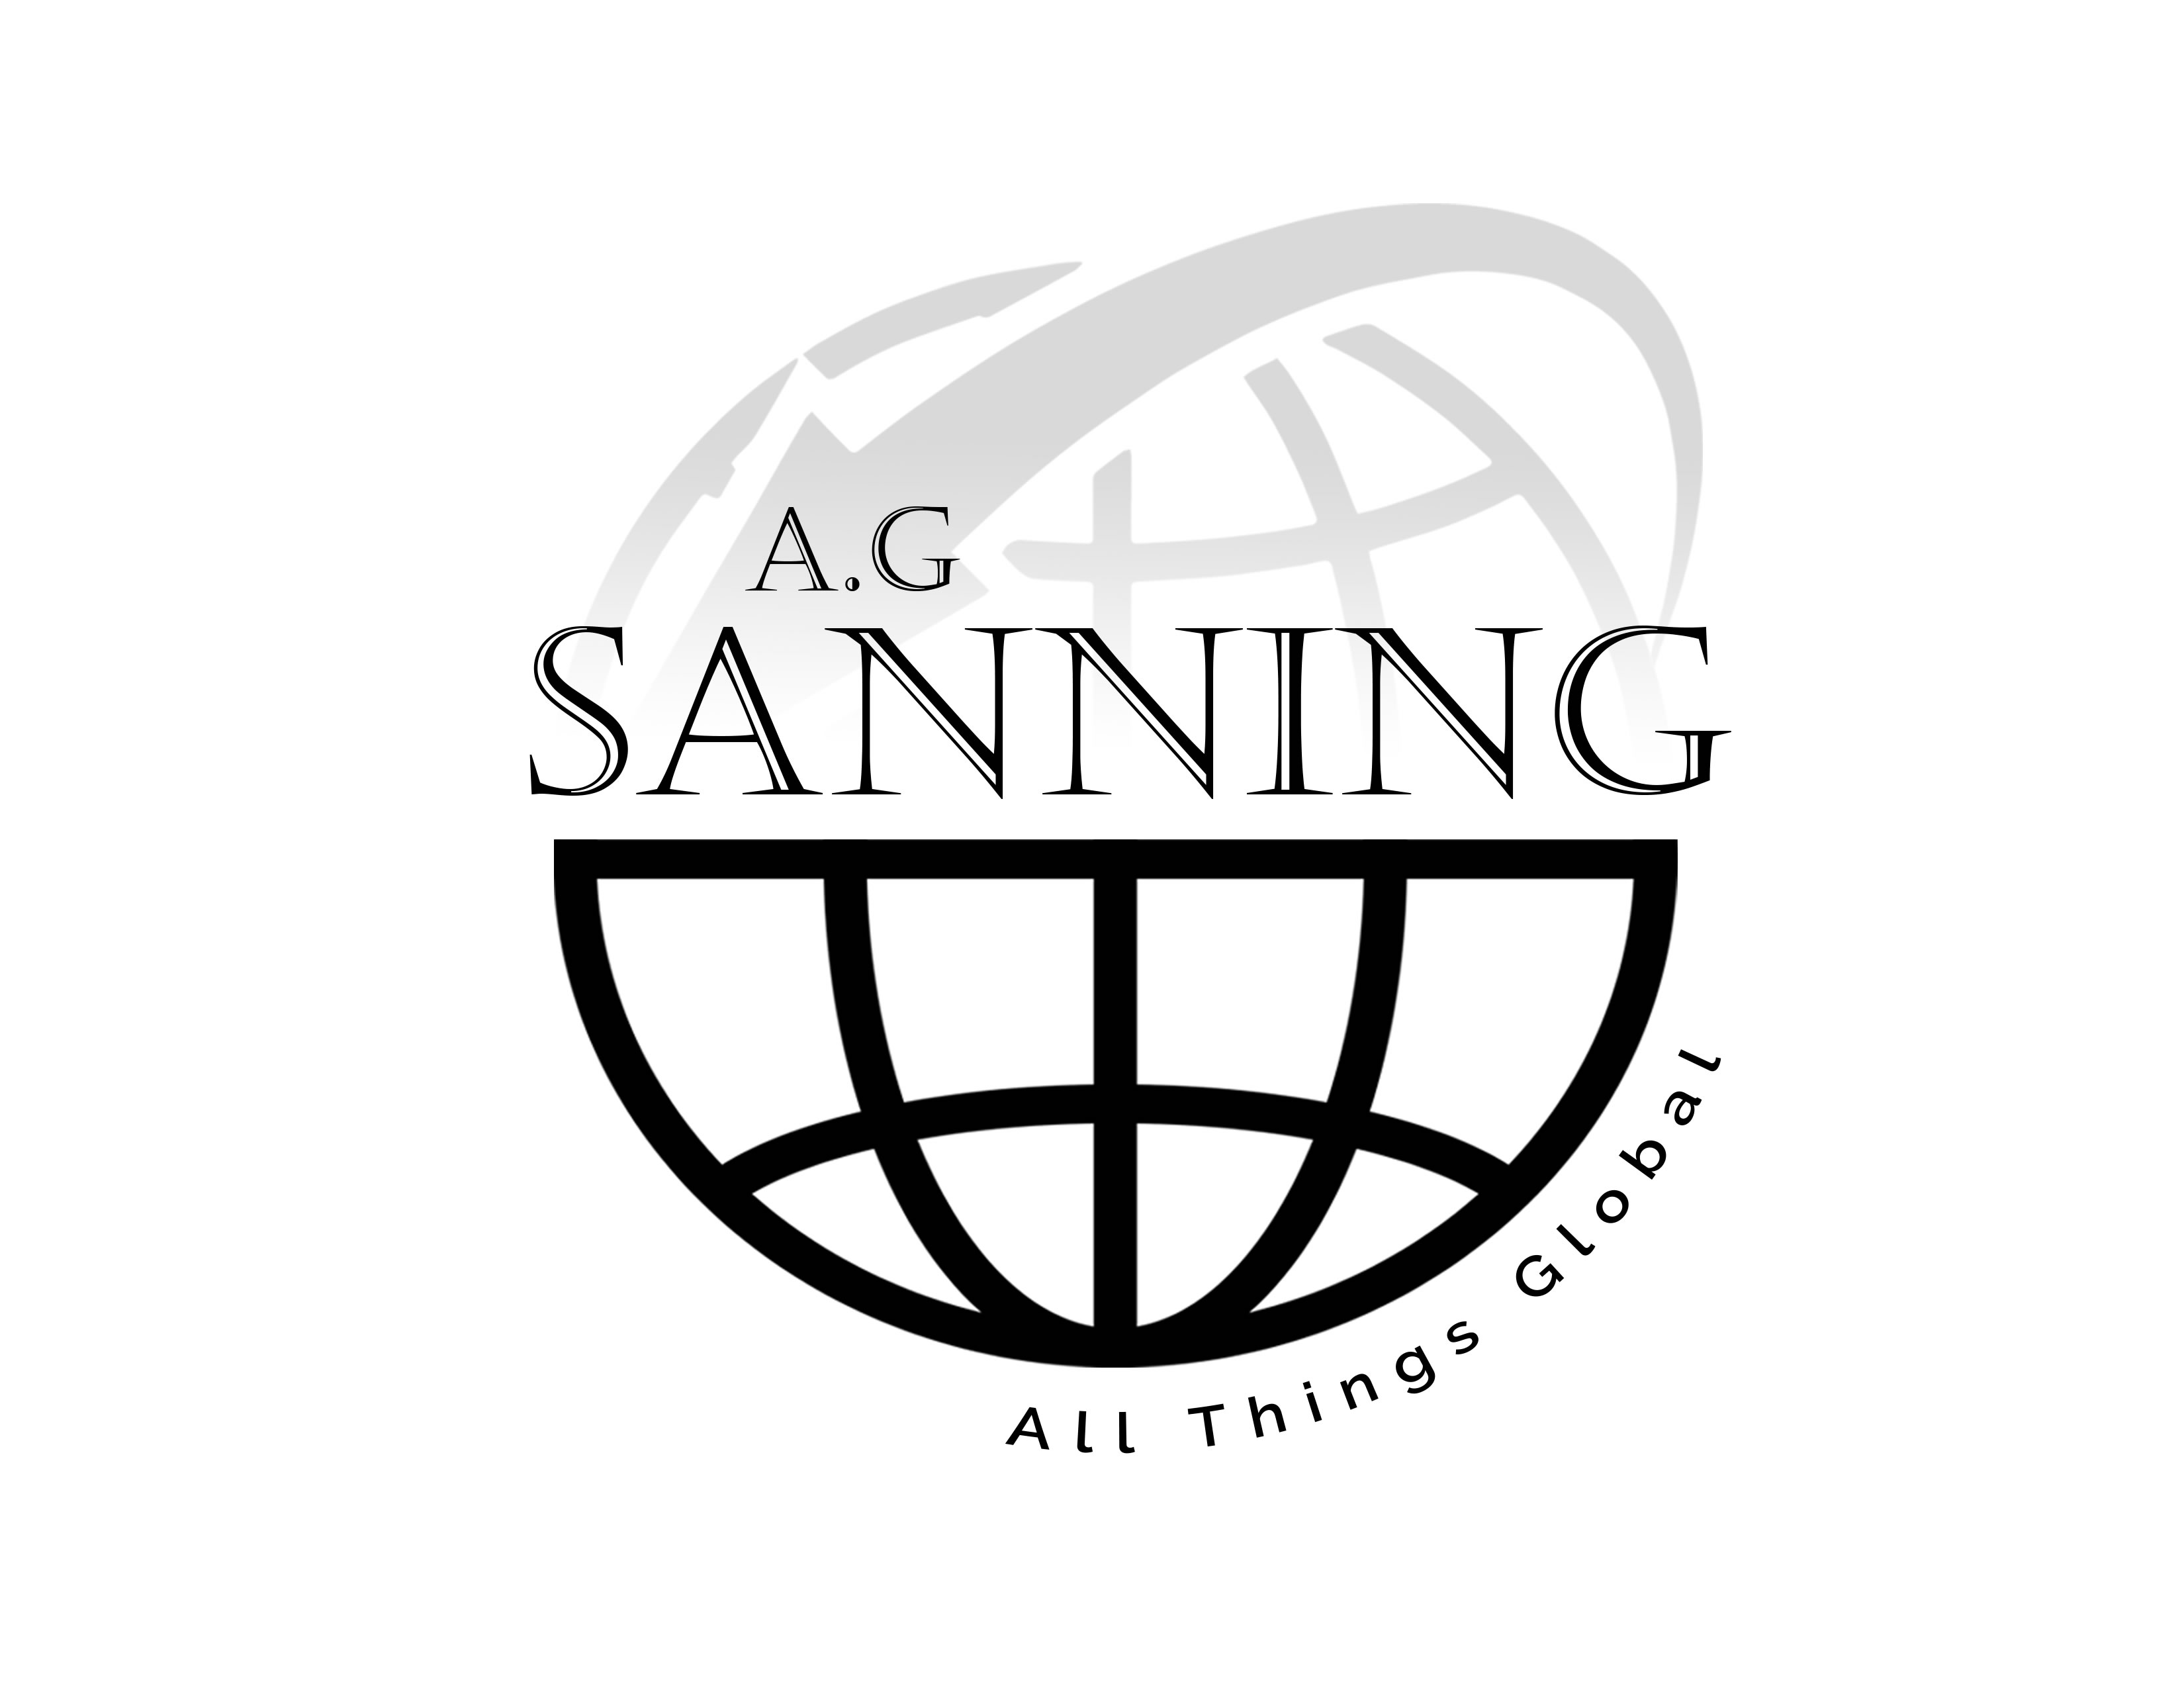 A.G. Sanning